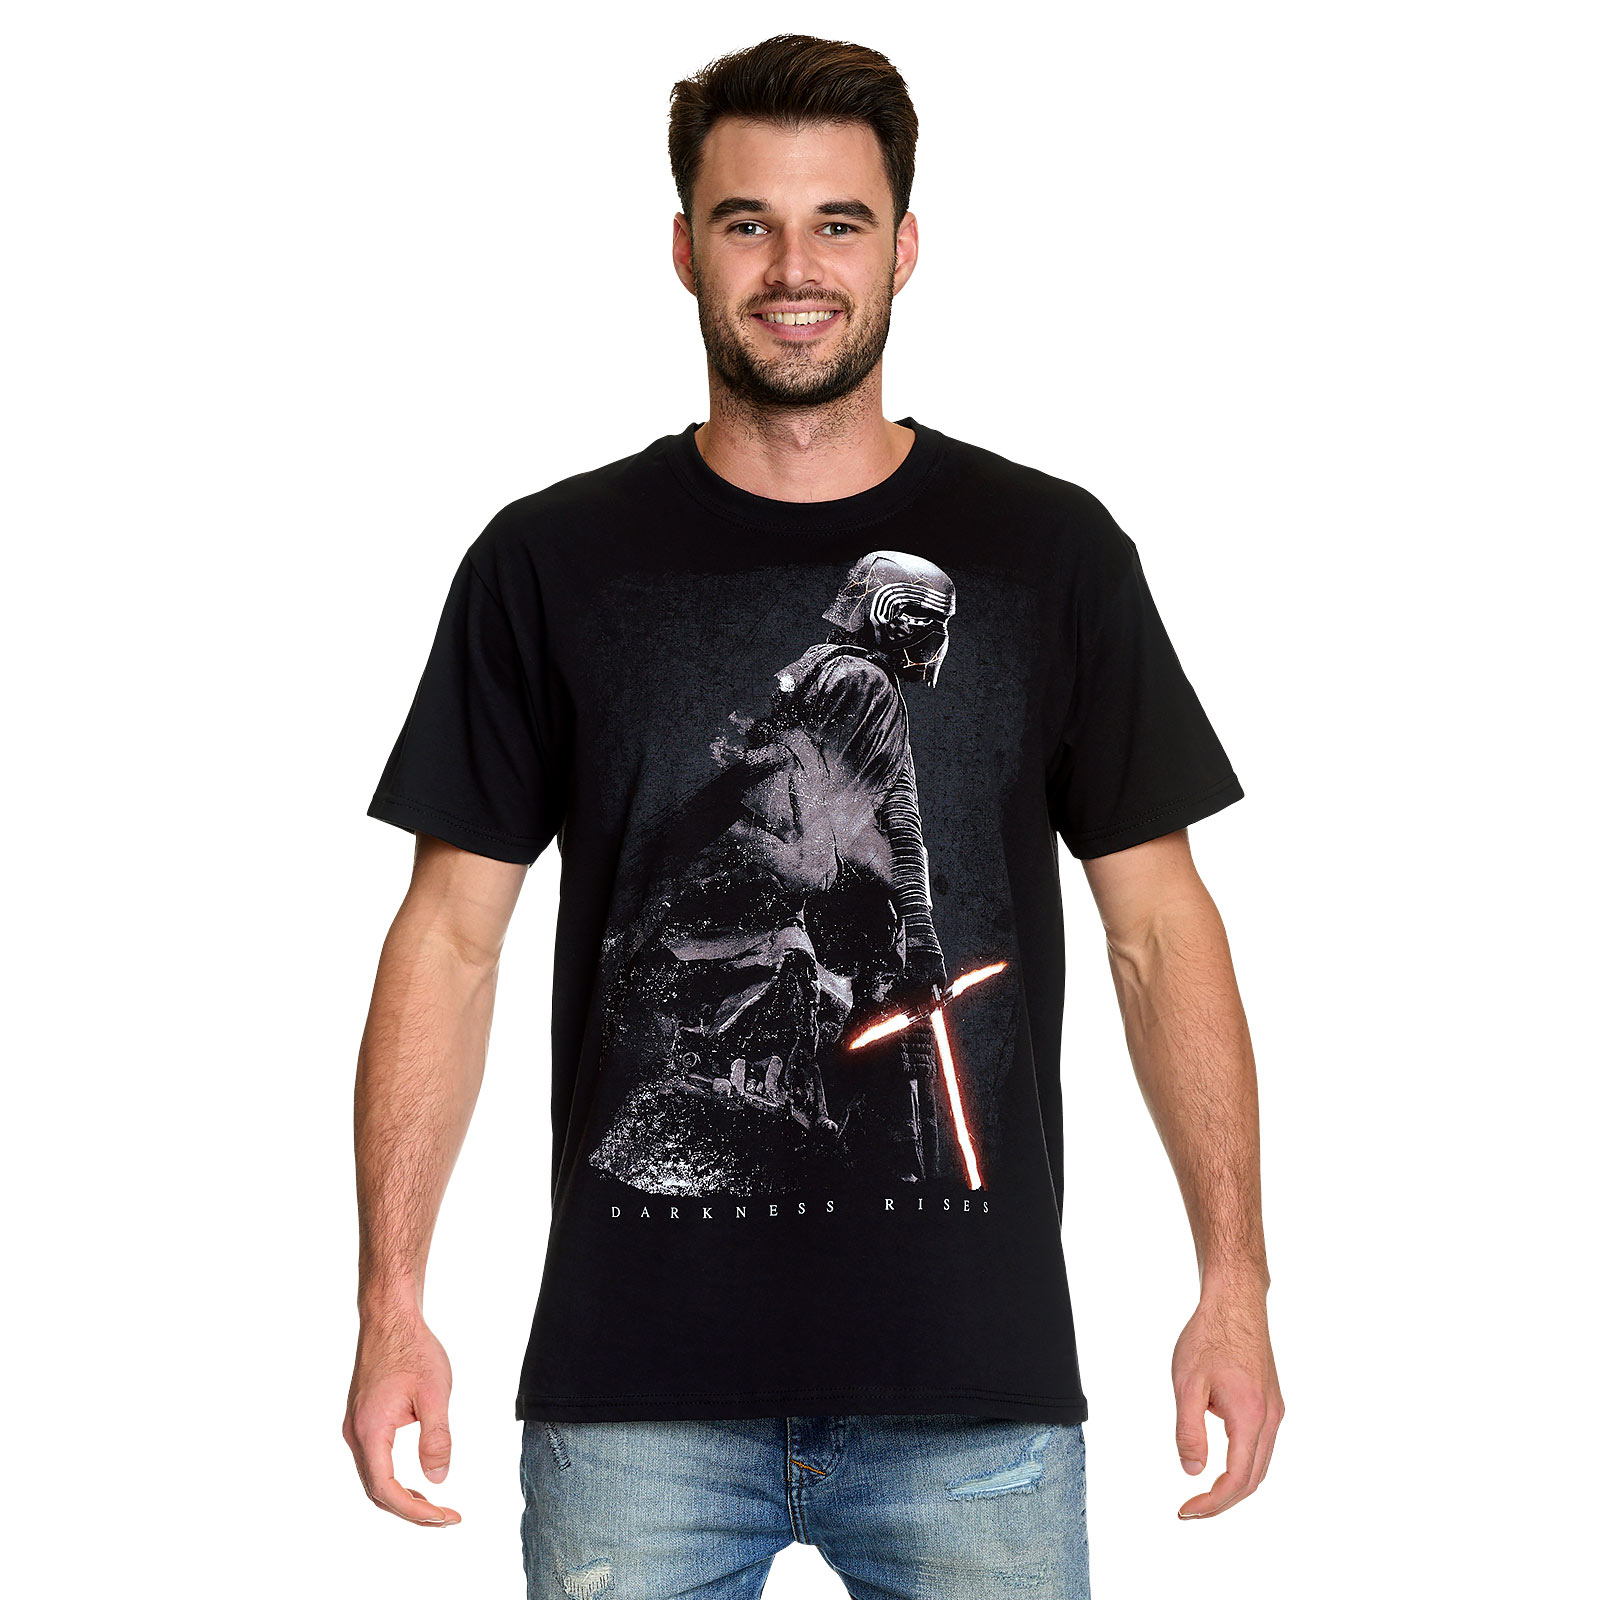 Star Wars - Darkness Rises T-Shirt Black